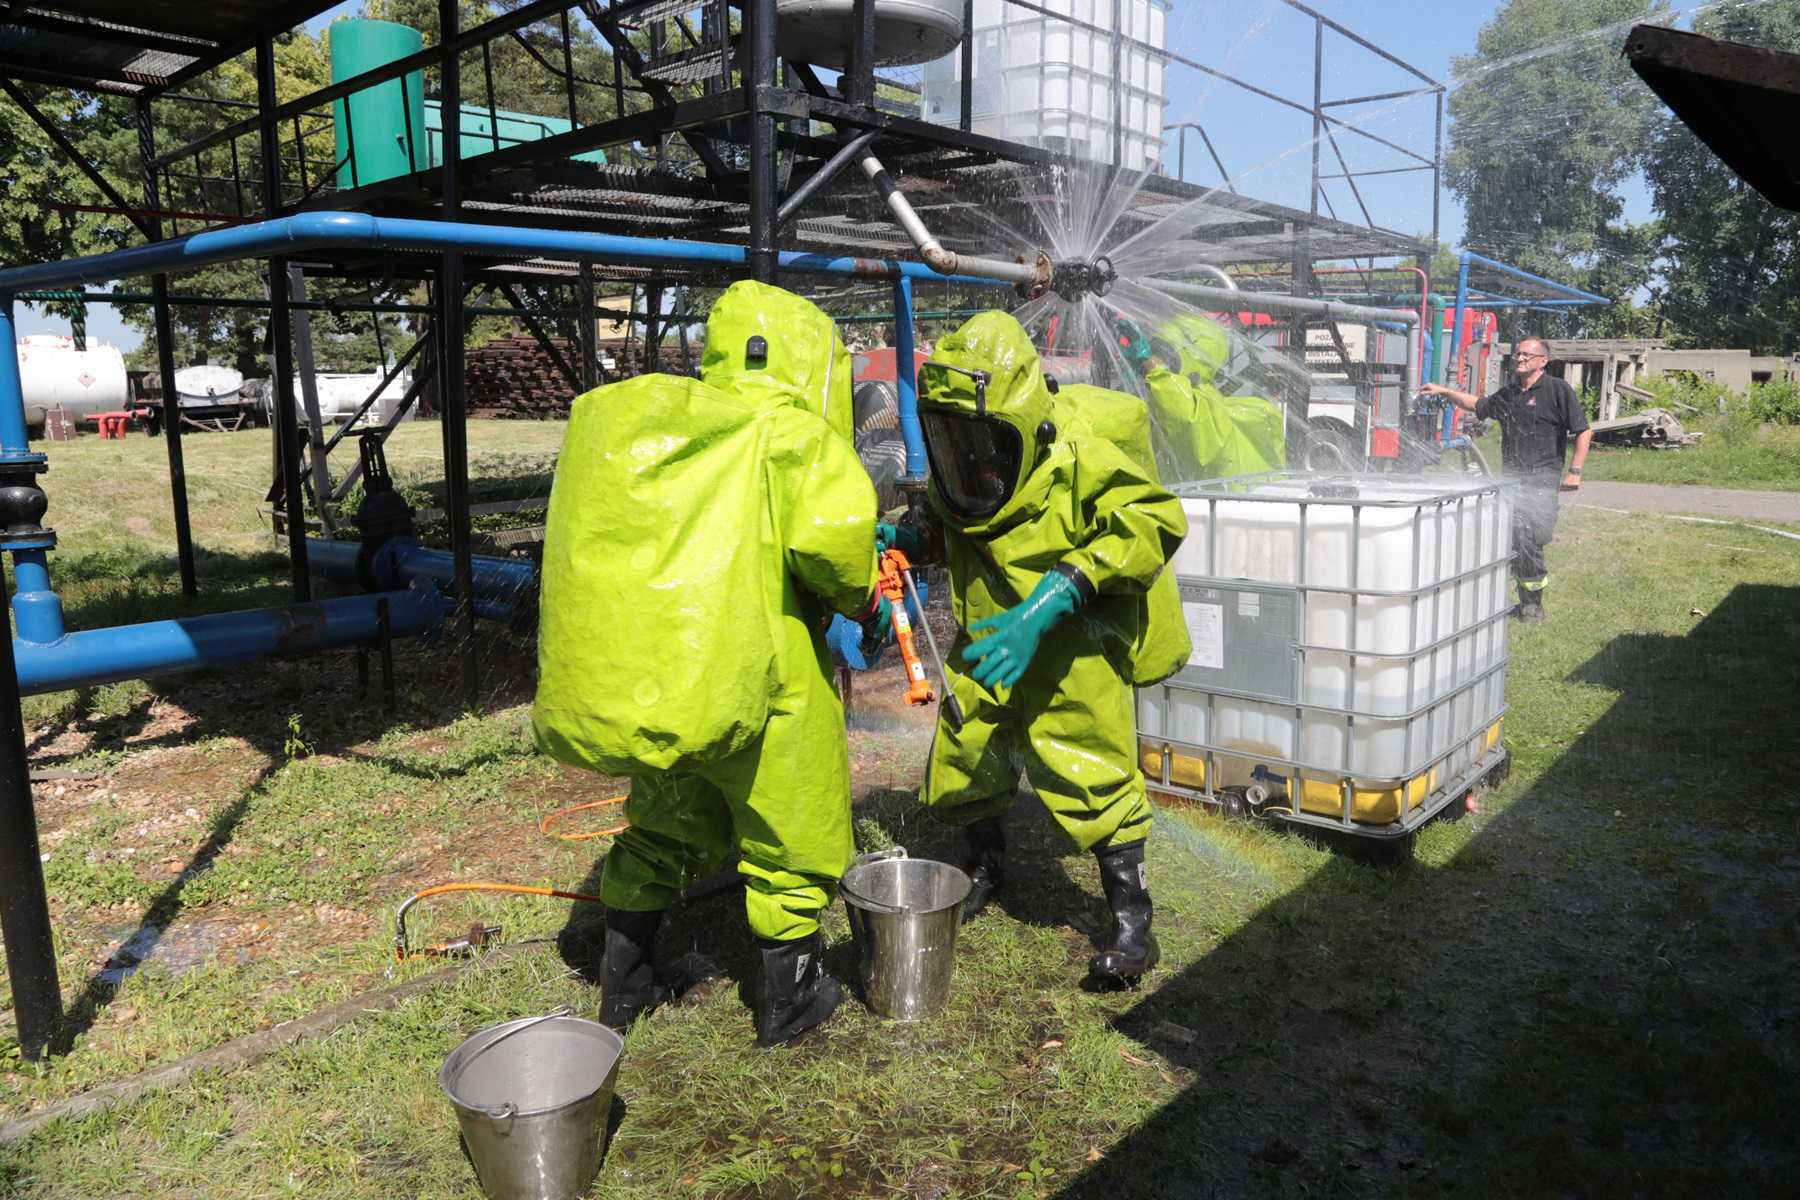 Specjalistyczne szkolenie w dziedzinie ratownictwa podczas katastrof chemicznych i ekologicznych realizowane dla strażaków z Republiki Czeskiej